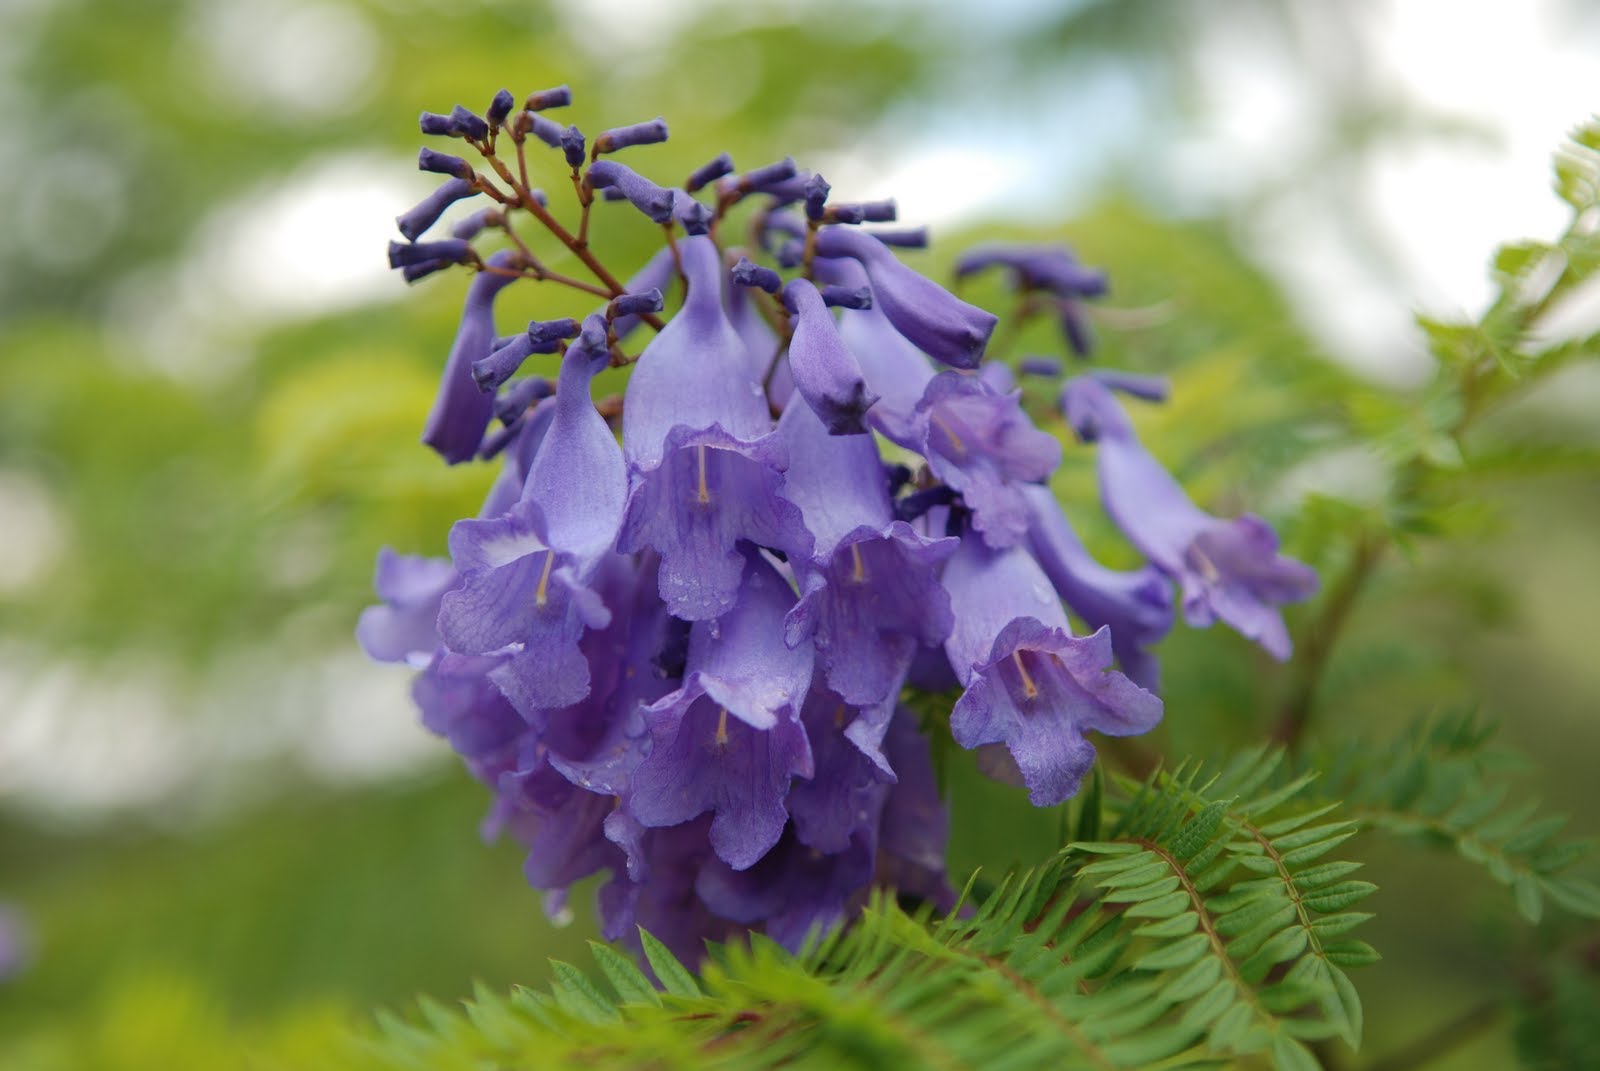 Dalat is beautiful in purple phoenix flower season